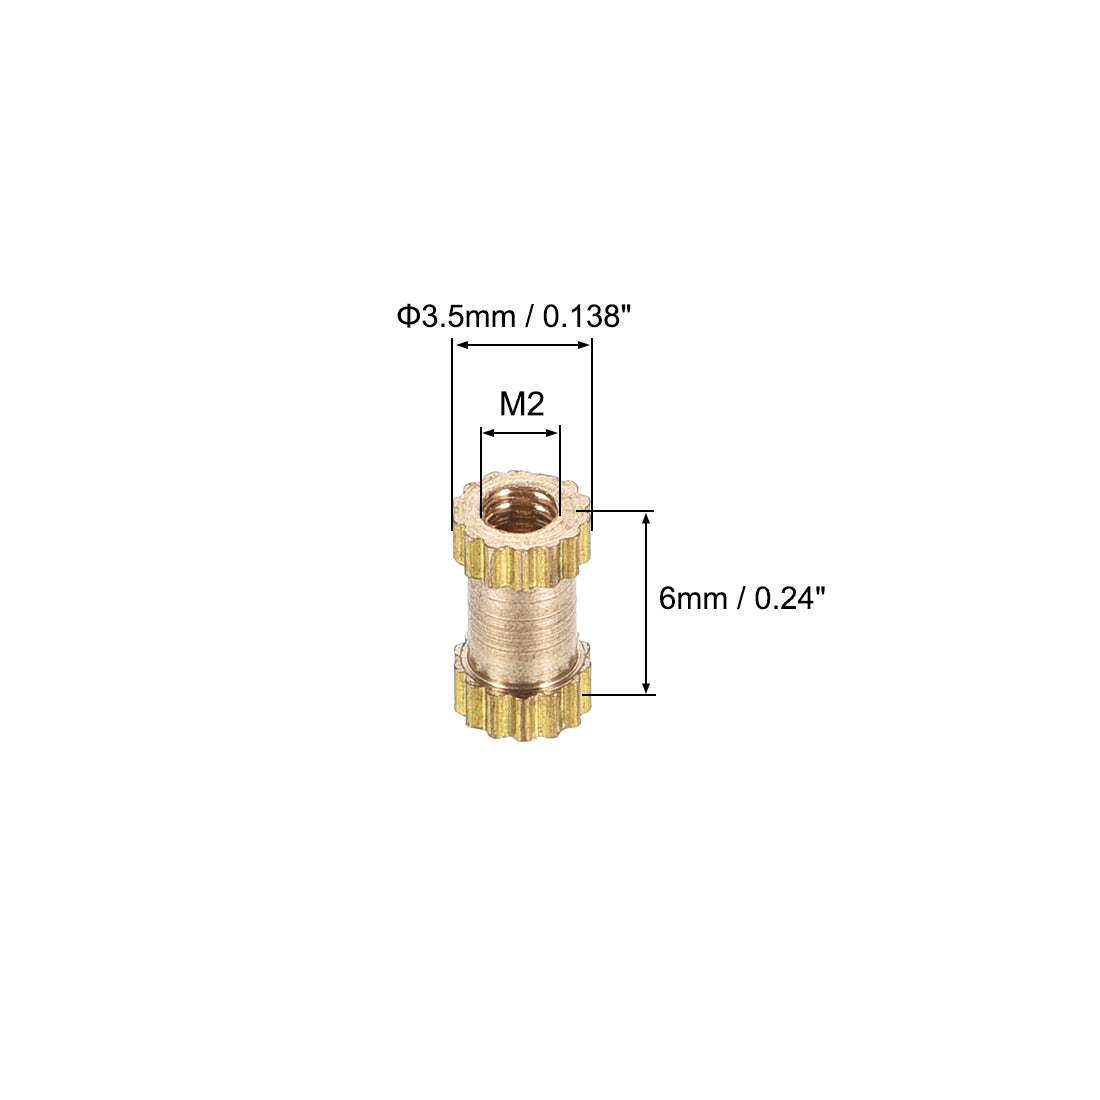 uxcell Uxcell Knurled Insert Nuts, M2 x 6mm(L) x 3.5mm(OD) Female Thread Brass Embedment Assortment Kit, 30 Pcs